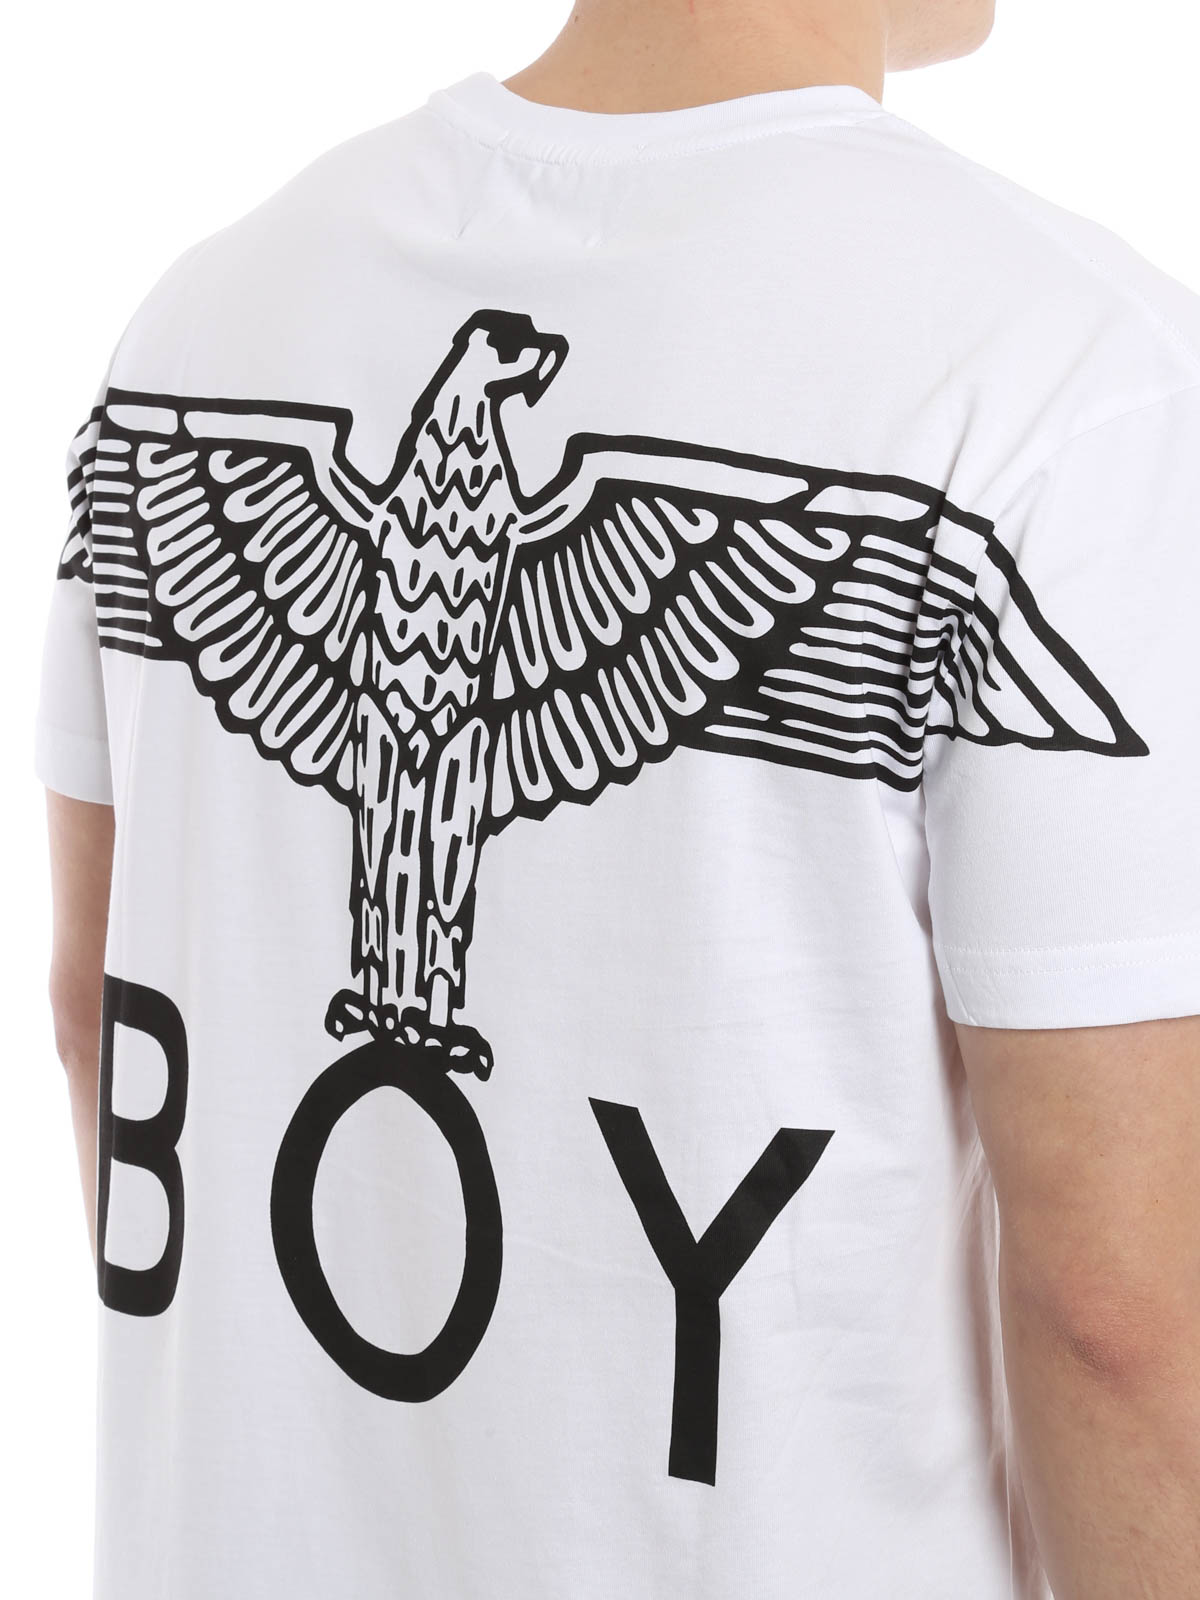 Boy London T Shirt Outlet, 51% OFF | jsazlaw.com